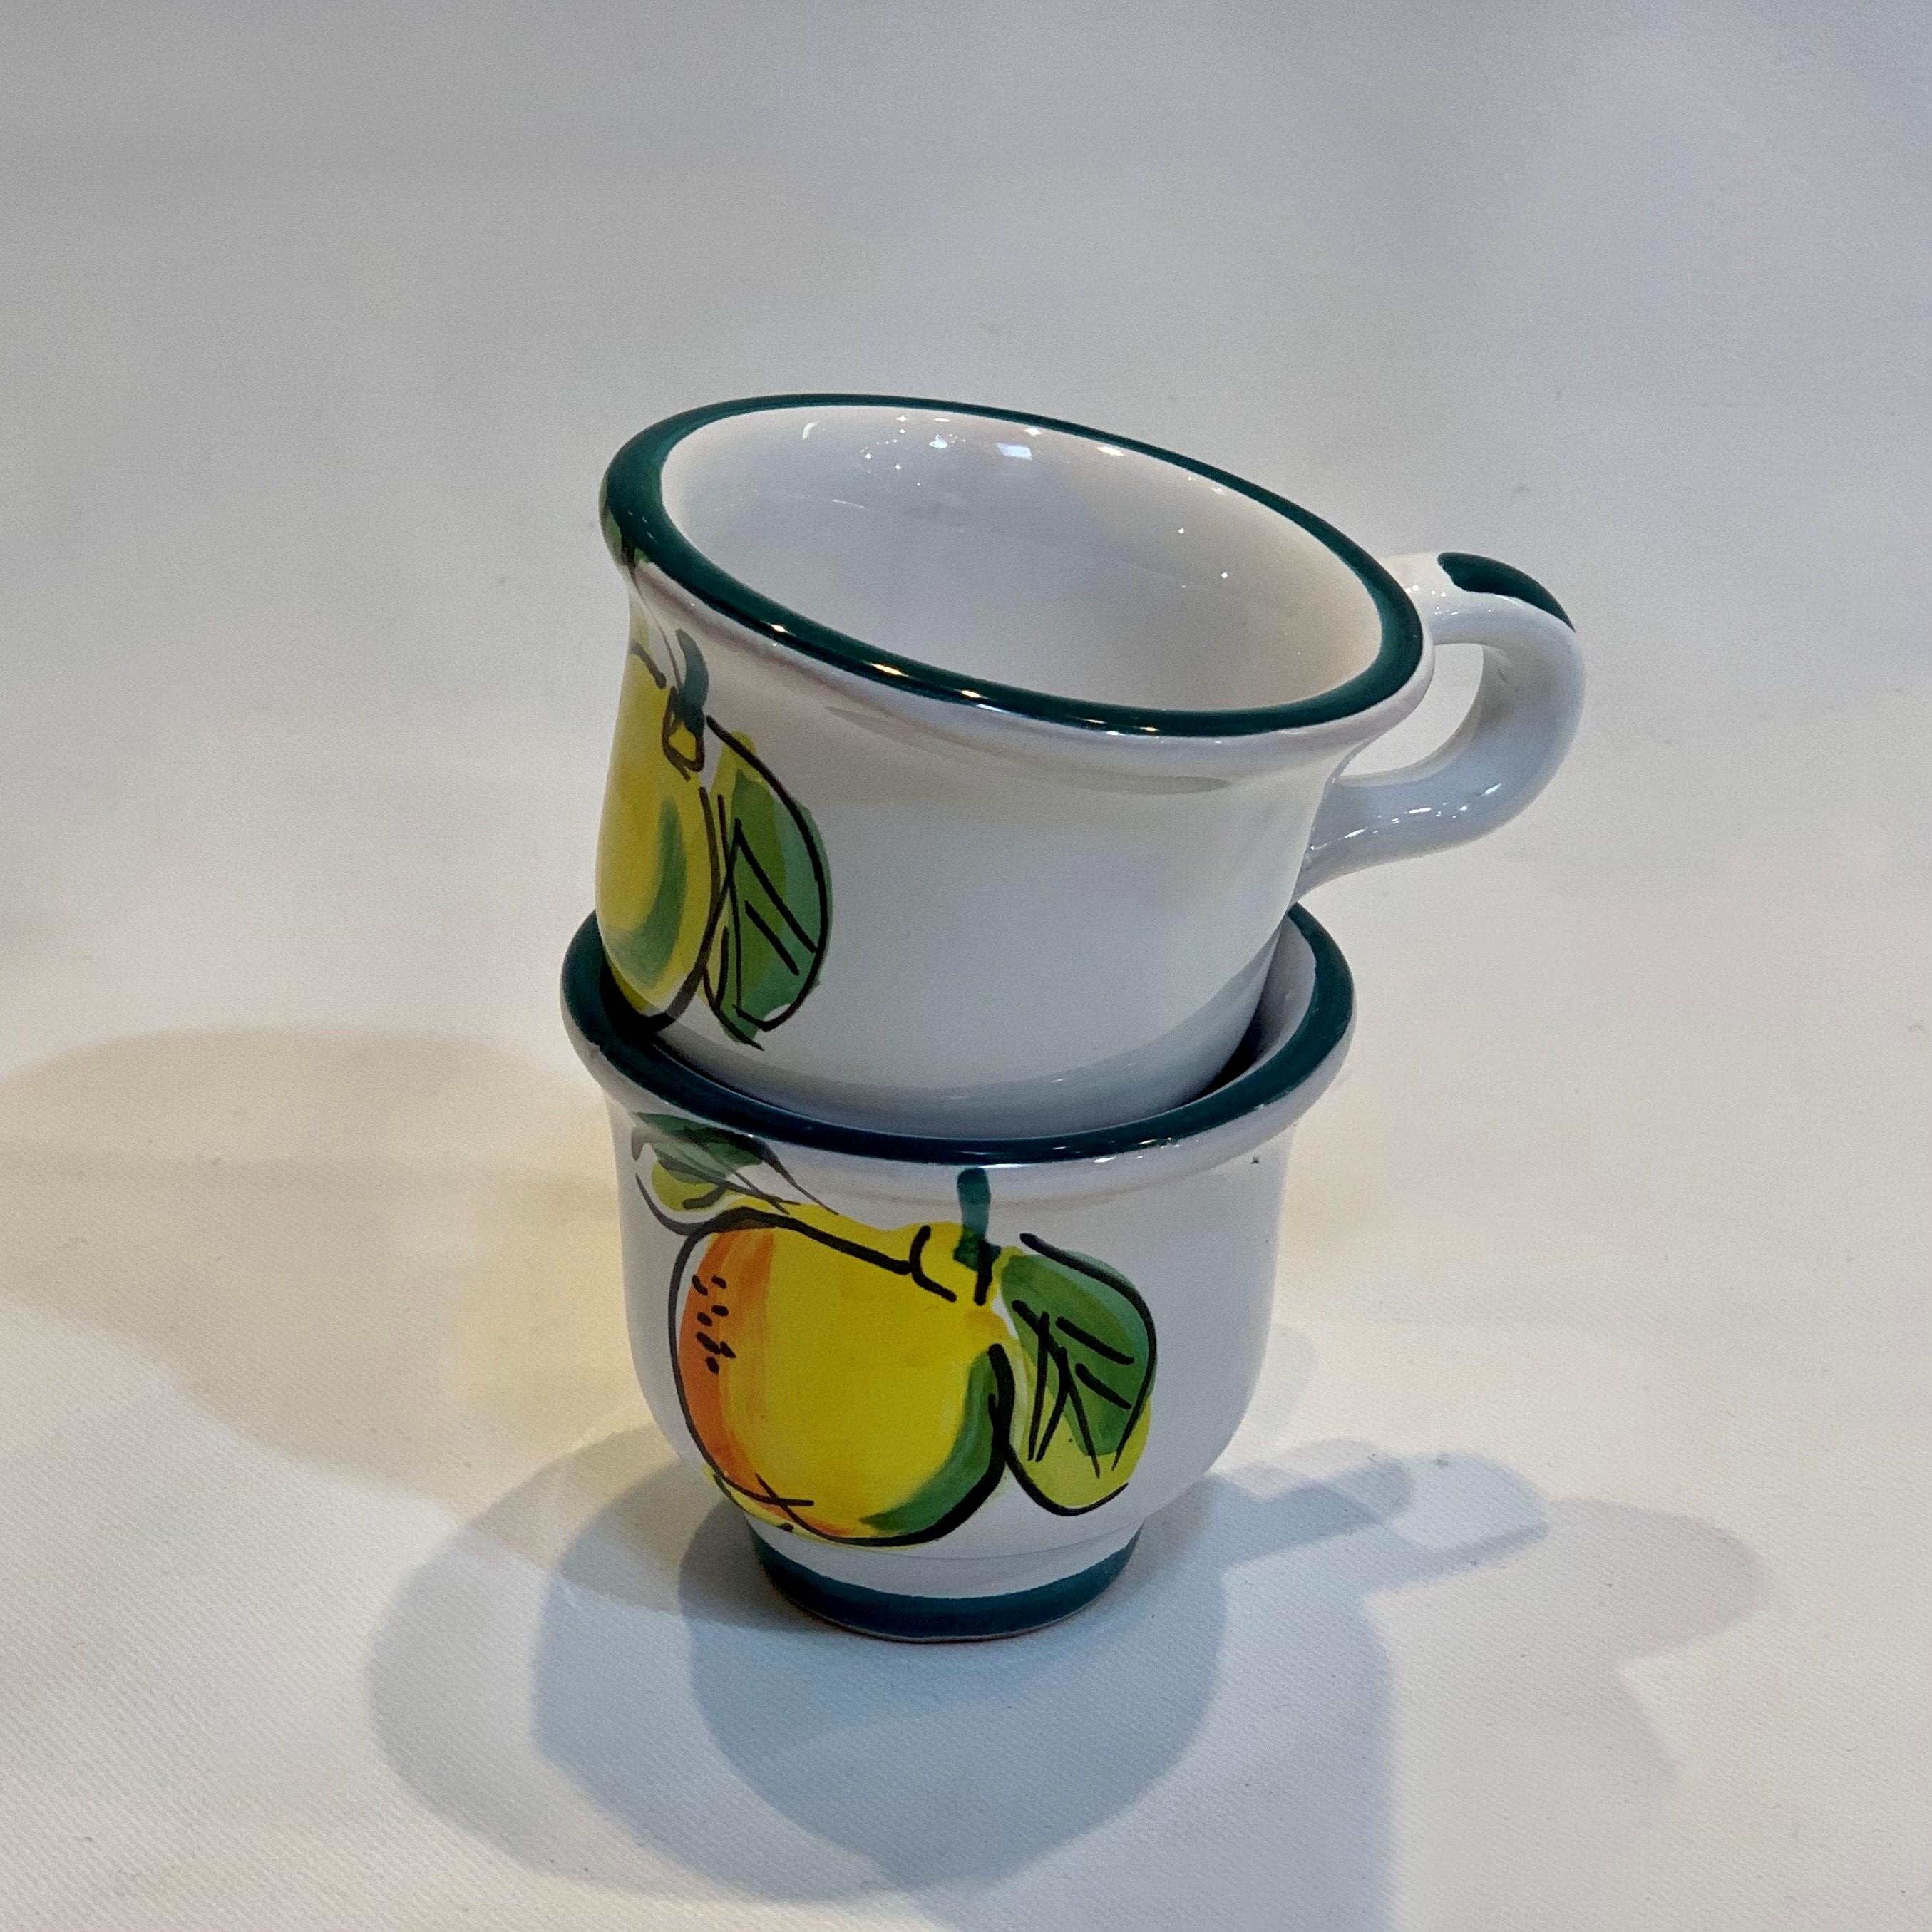 https://www.italianpottery.com/wp-content/uploads/2021/05/lemon-espresso-cups.jpg